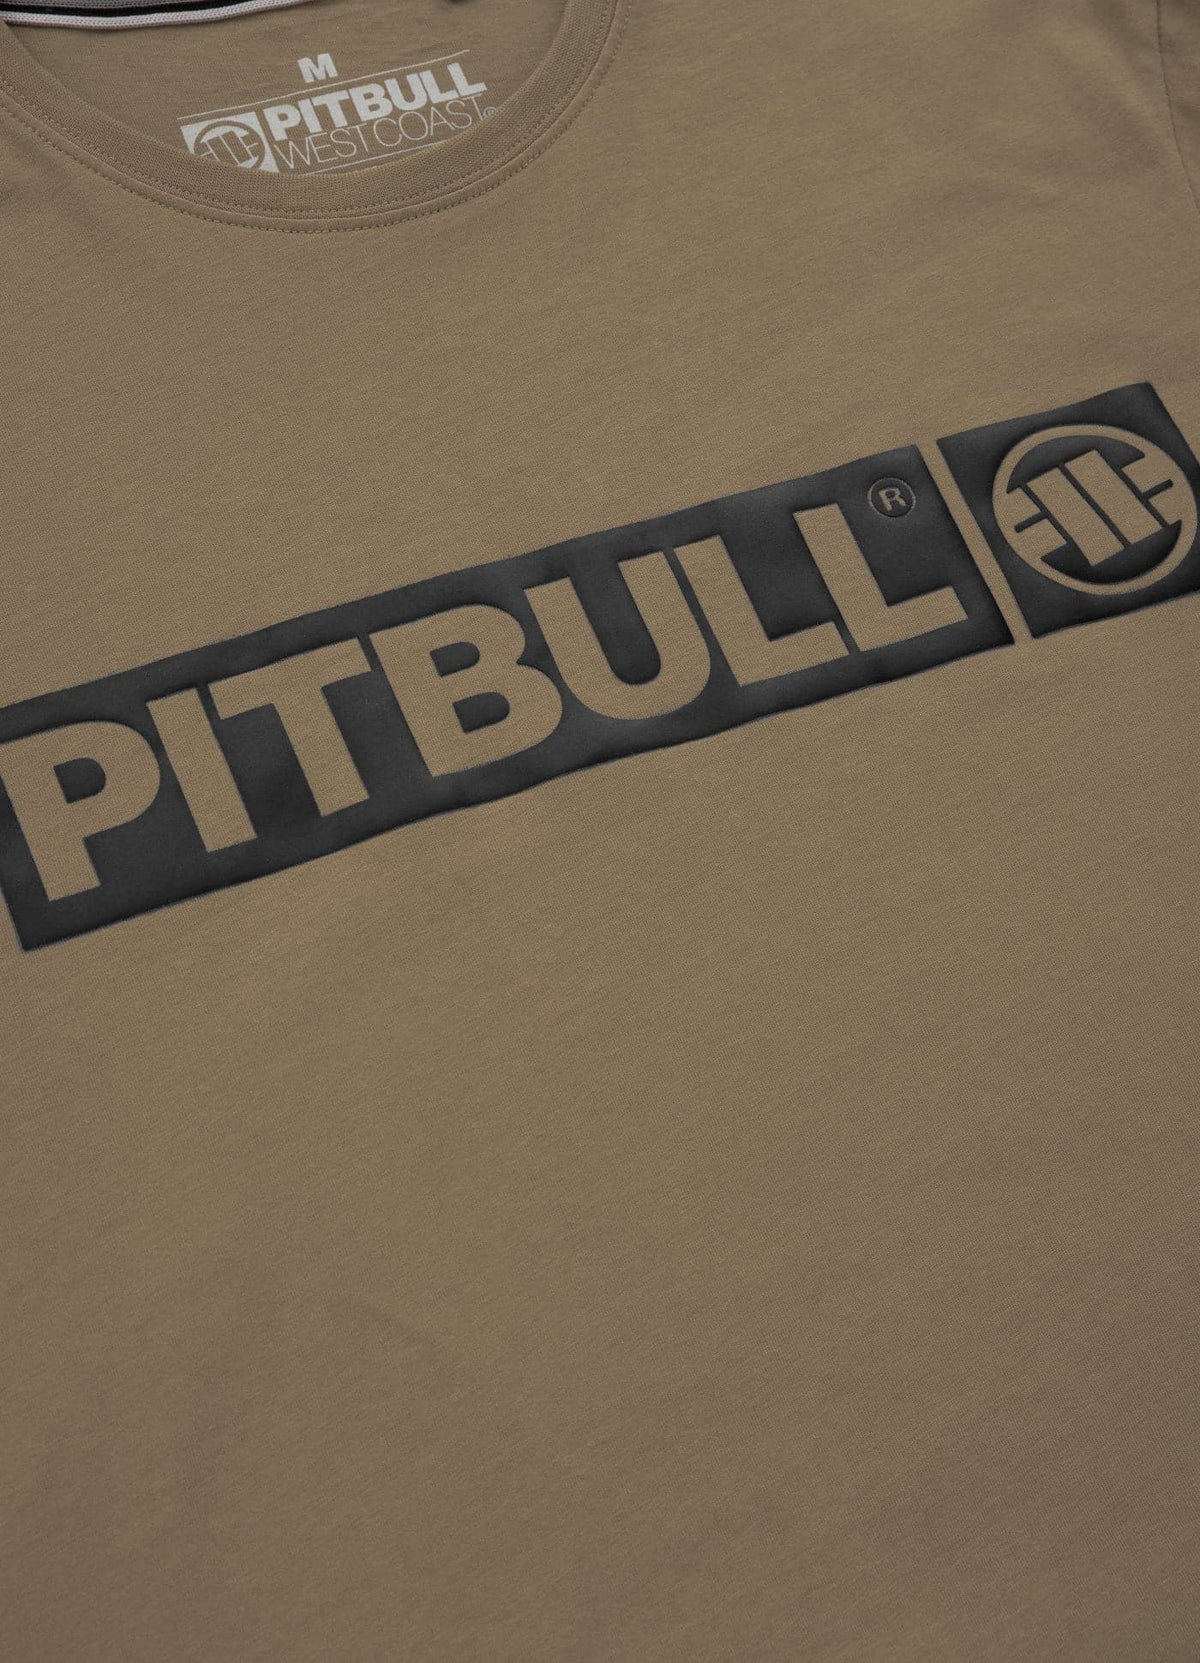 HILLTOP Lightweight Brown T-shirt - Pitbullstore.eu